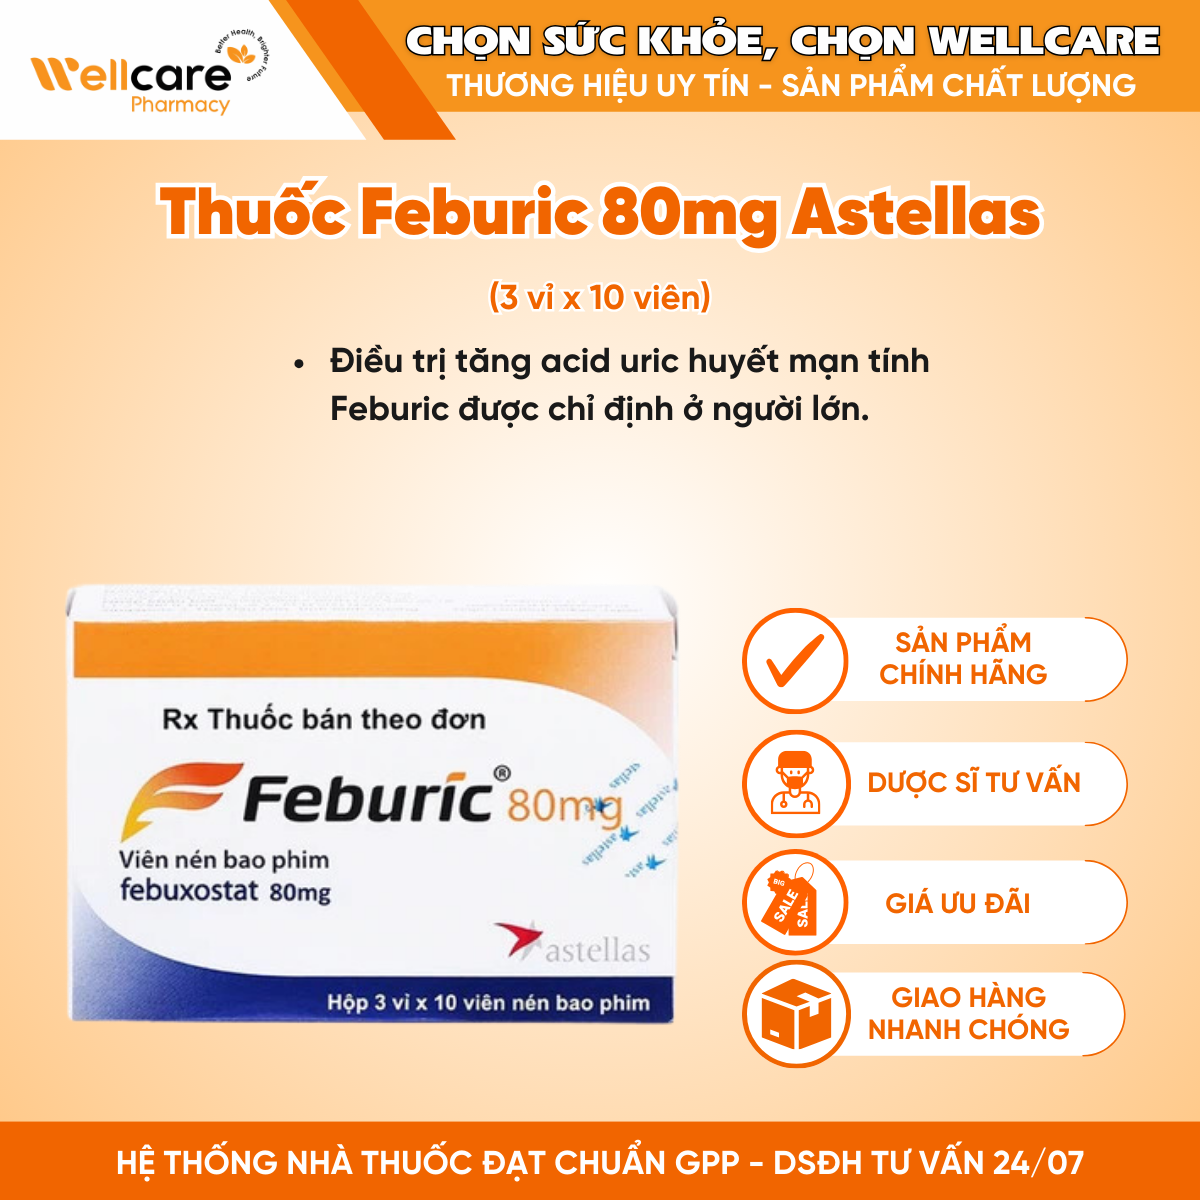 Thuốc Feburic 80mg Astellas – Điều trị tăng acid uric huyết mạn tính (3 vỉ x 10 viên)